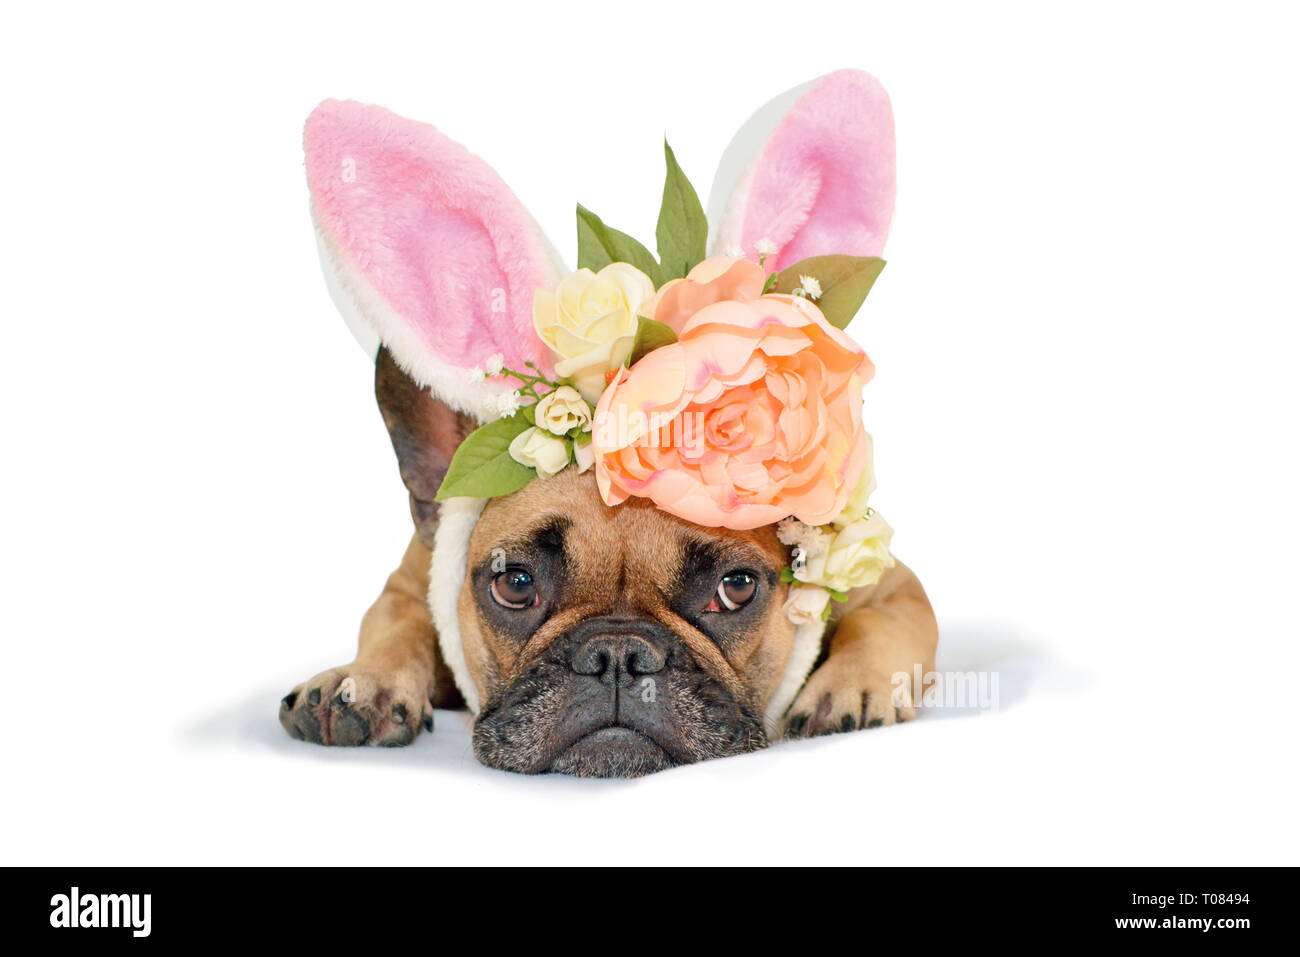 Cute fawn Französische Bulldogge hund Mädchen liegt auf dem Boden mit floralen Kopfschmuck mit großen schönen Blumen Lukas Päonien Rosen und Osterhasen Ohren auf Weiß zurück Stockfoto